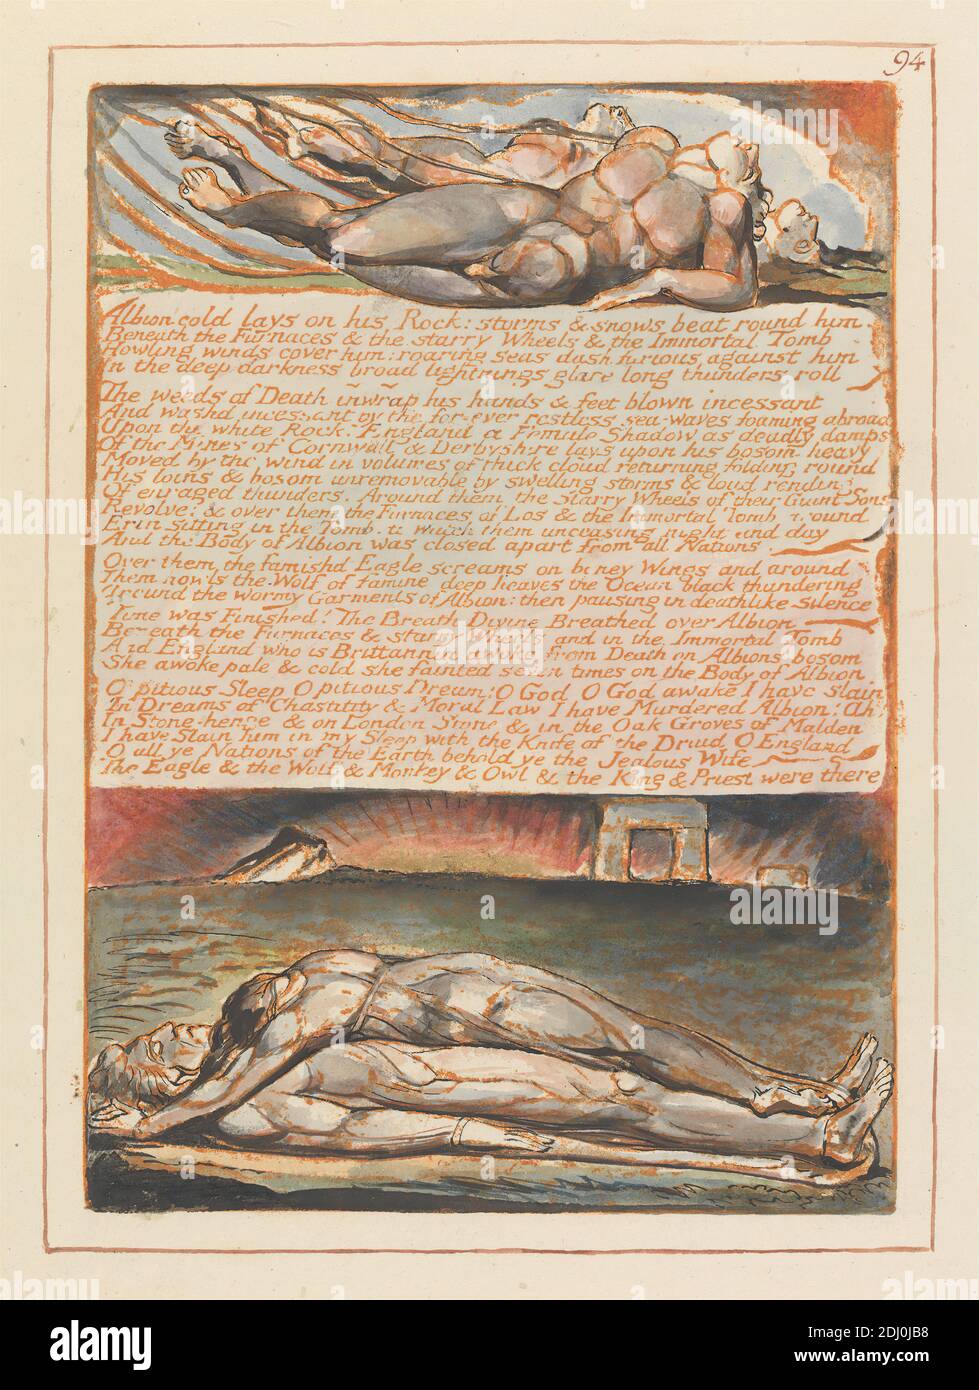 Jerusalem, Plate 94, 'Albion Cold Lays on His Rock....', Stampa fatta da William Blake, 1757–1827, British, 1804 a 1820, rilievo Etching stampato in arancione con penna e inchiostro nero e acquerello su carta di wove crema moderatamente spessa, liscia, foglio: 13 1/2 x 10 3/8 pollici (34.3 x 26.4 cm) e piatto: 8 3/8 x 6 pollici (21.2 x 15.2 cm), arco, morti, morte, collina, tema letterario, uomini, lutto, soggetto religioso e mitologico, radici, sinews, pietra, sole, testo, donne Foto Stock